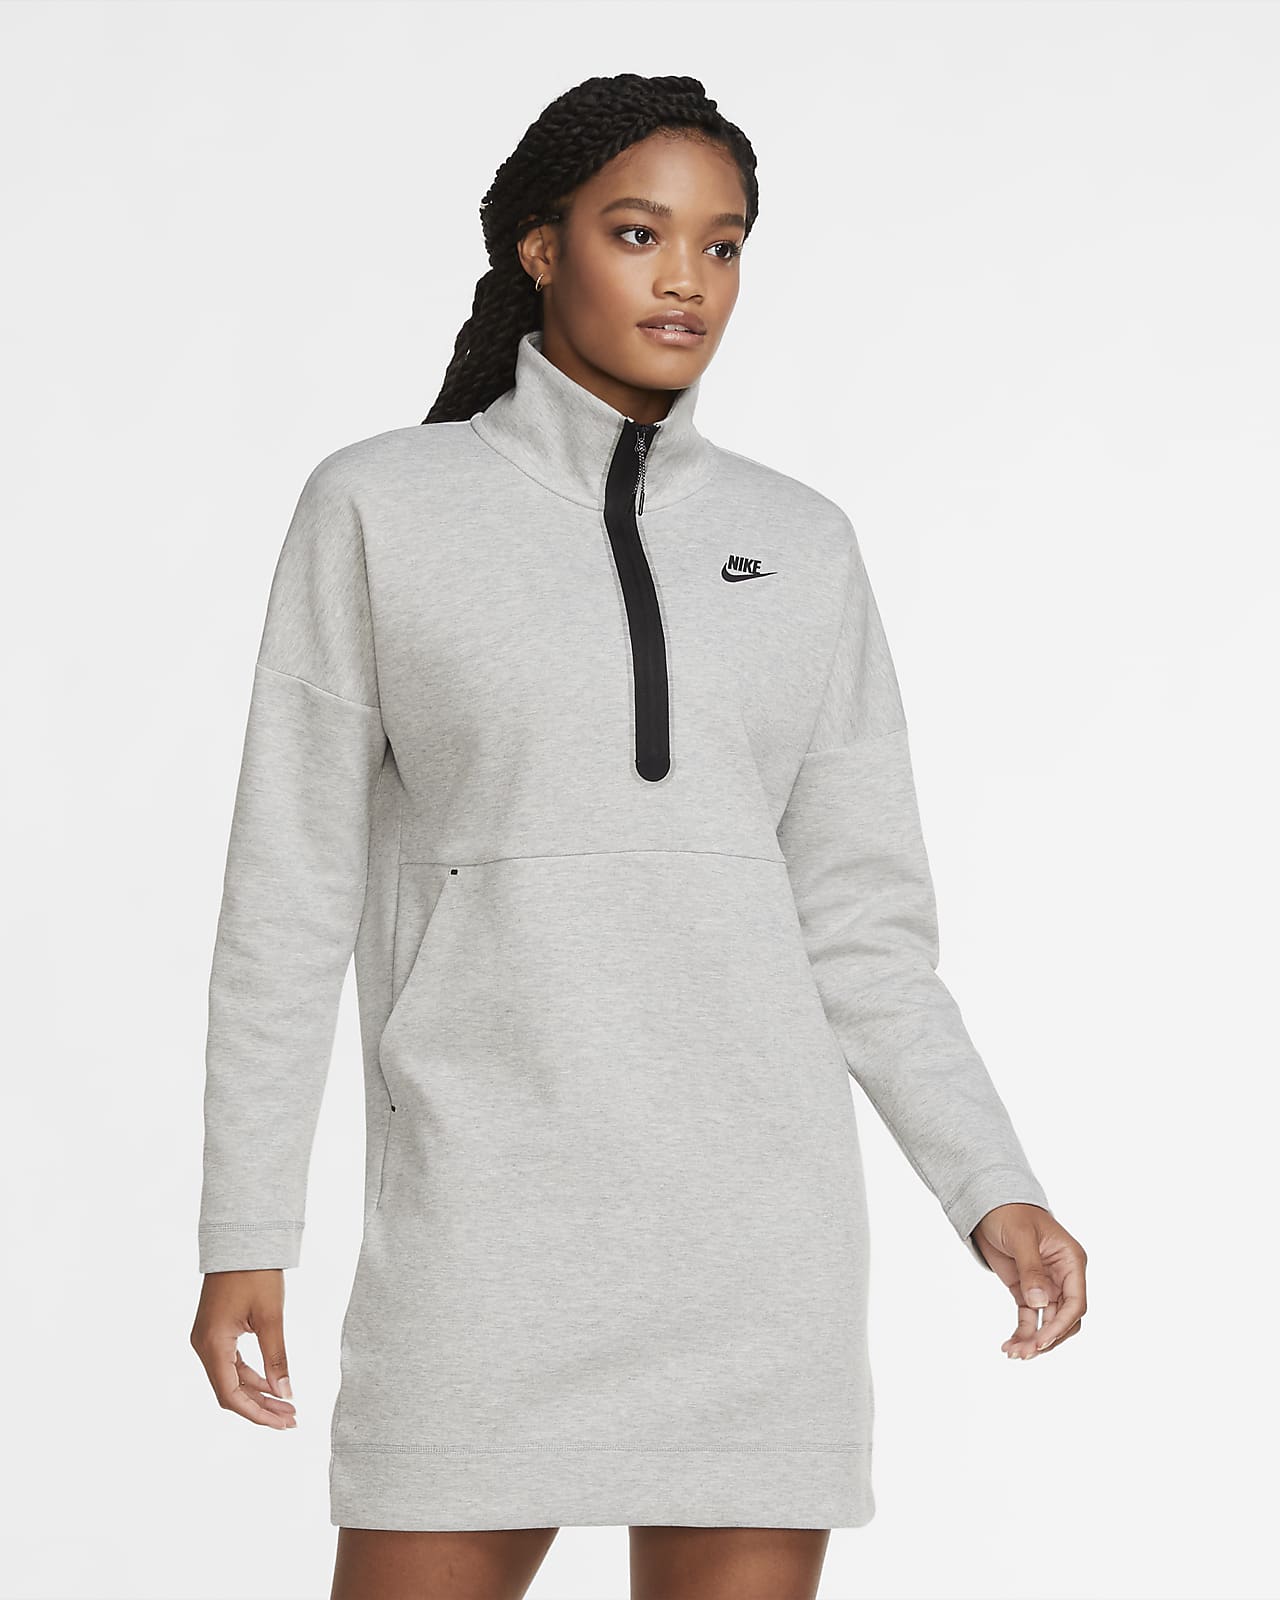 nike sportswear tech fleece women's jacket